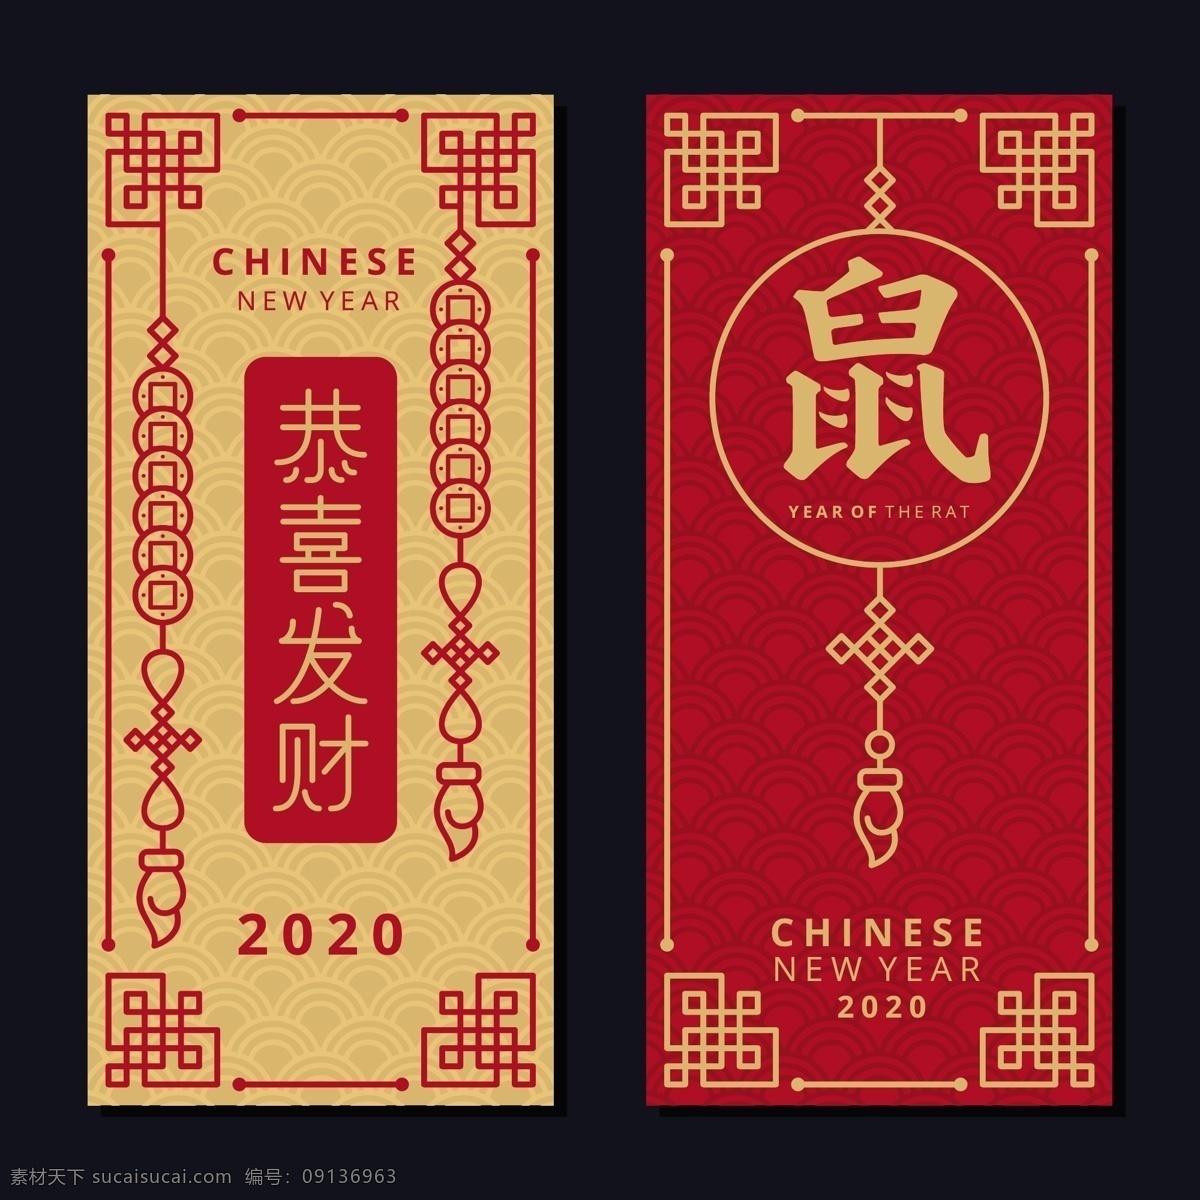 恭喜发财 新年 新年快乐 贺词 鼠年吉祥 鼠年 2020 条幅 贺卡 招贴 海报 年历 封面 中国年 祝福 节日 东方 大吉大利